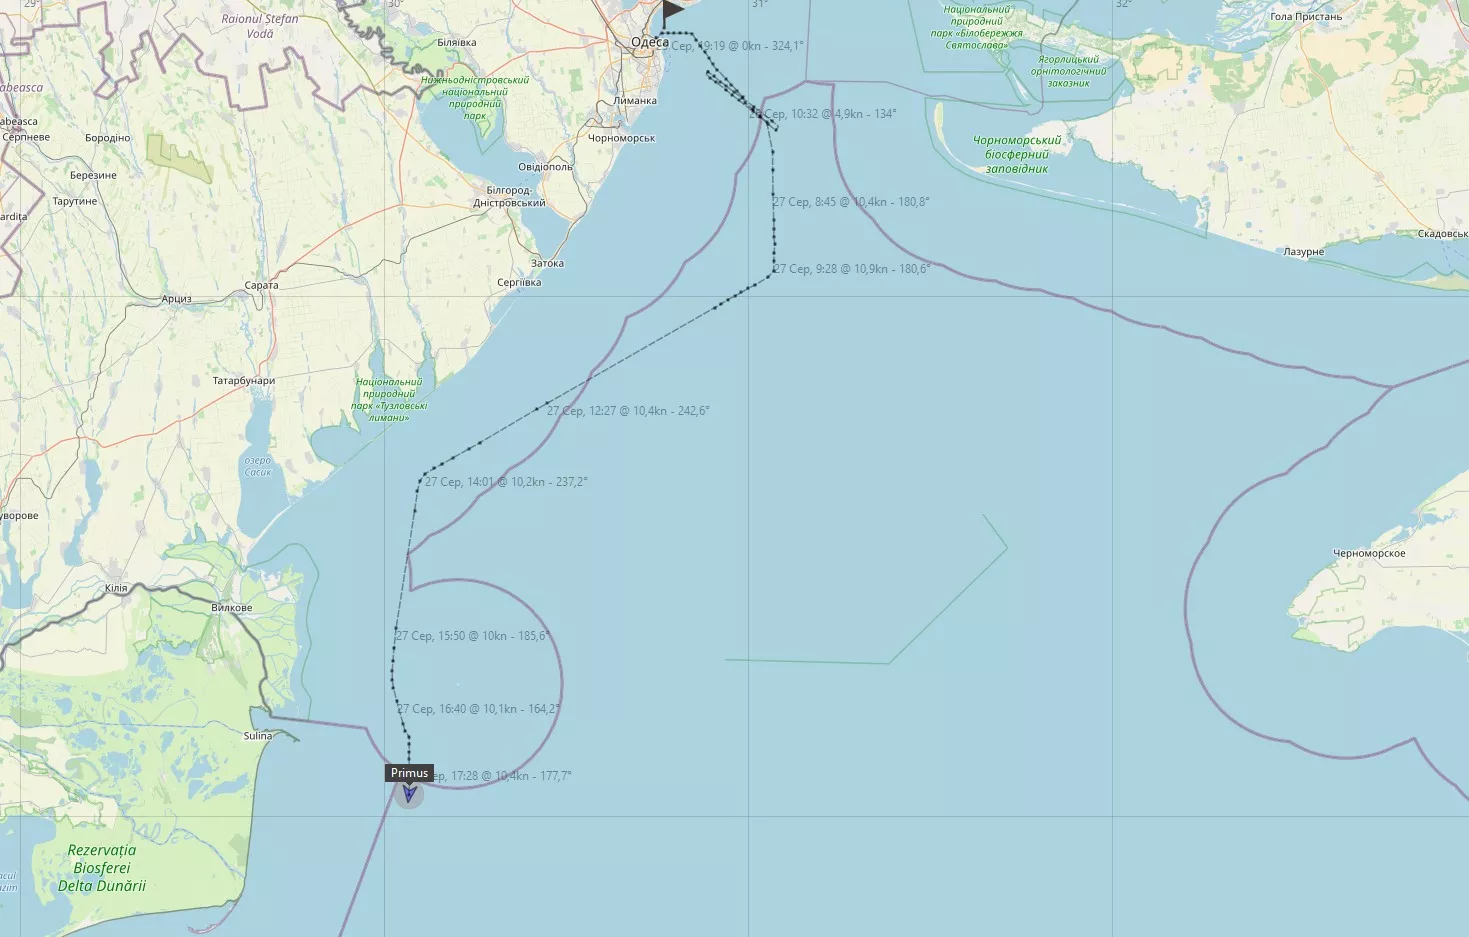 Друге судно вийшло з України Чорним морем й досягло територіальних вод Румунії